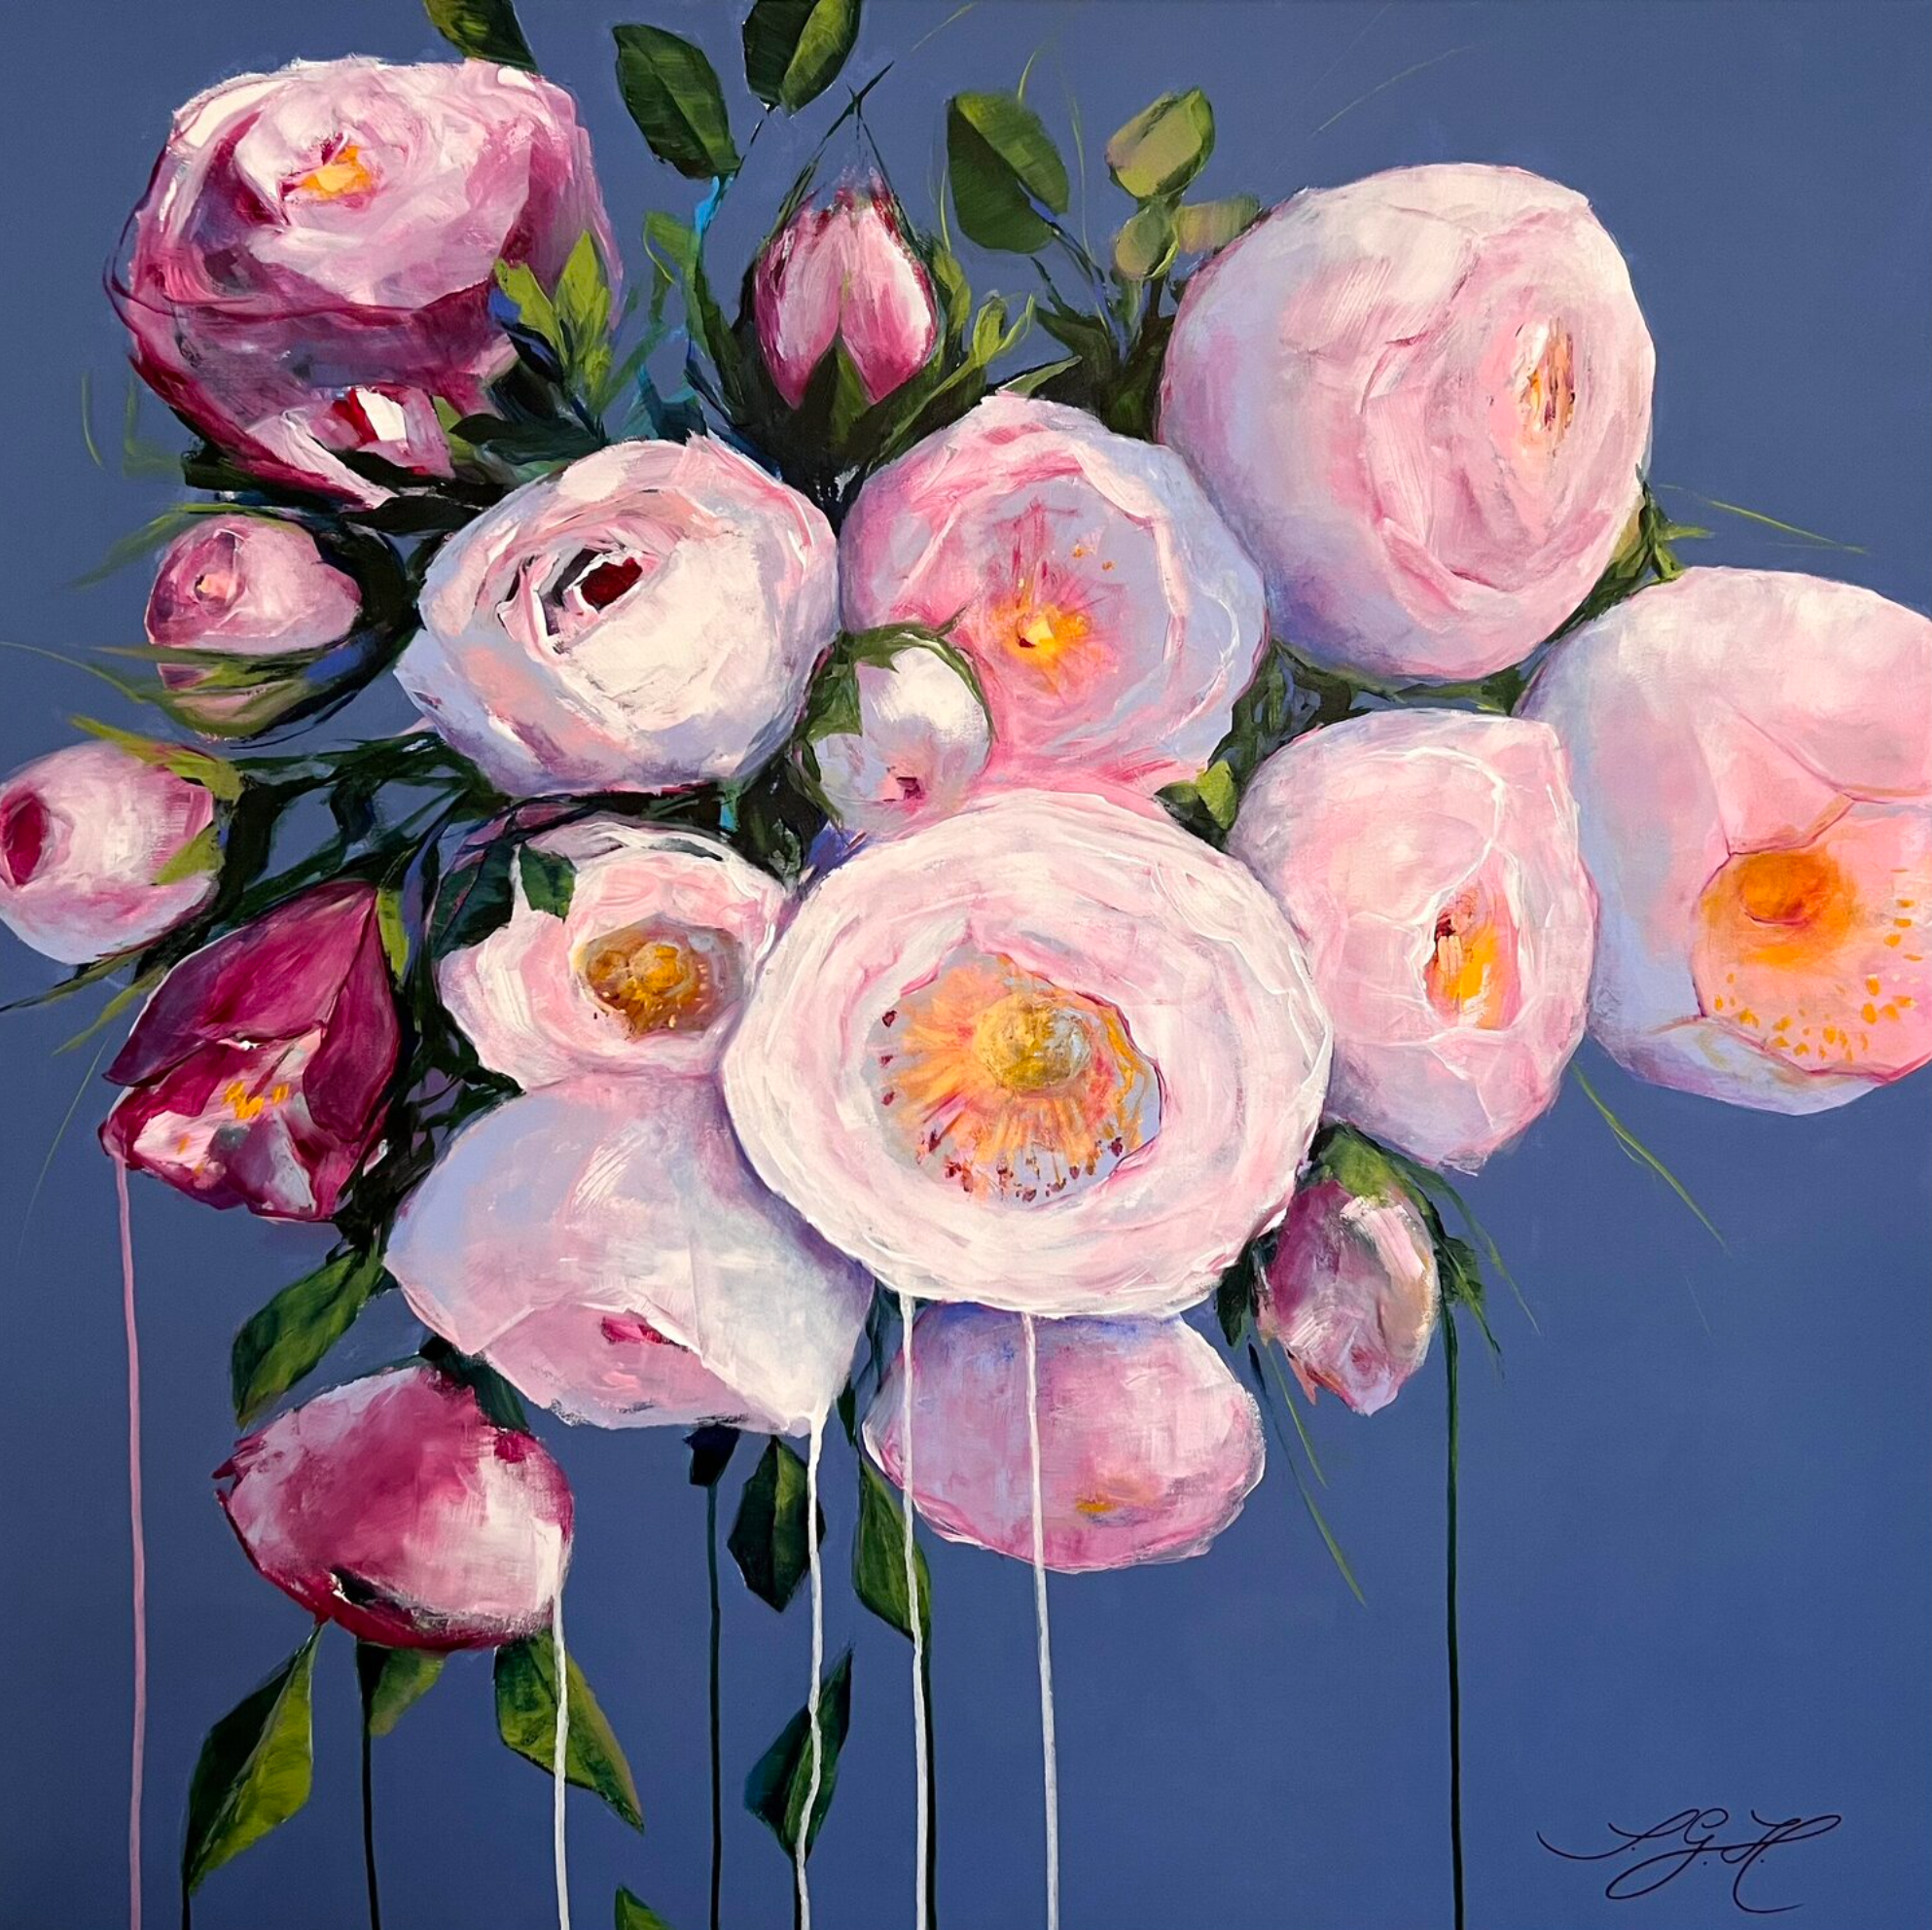 Dans les tableaux colorés "Big Flowers 4" de Sandra Gebhardt-Hoepfner, l'artiste a arrangé des roses blanches, roses et roses avec des feuilles juteuses vertes et vert clair sur un fond bleu tourterelle. Ce sont les roses de l'année de son jardin estival à Hambourg. Les fleurs blanches et roses scintillent dans la lumière du soleil.